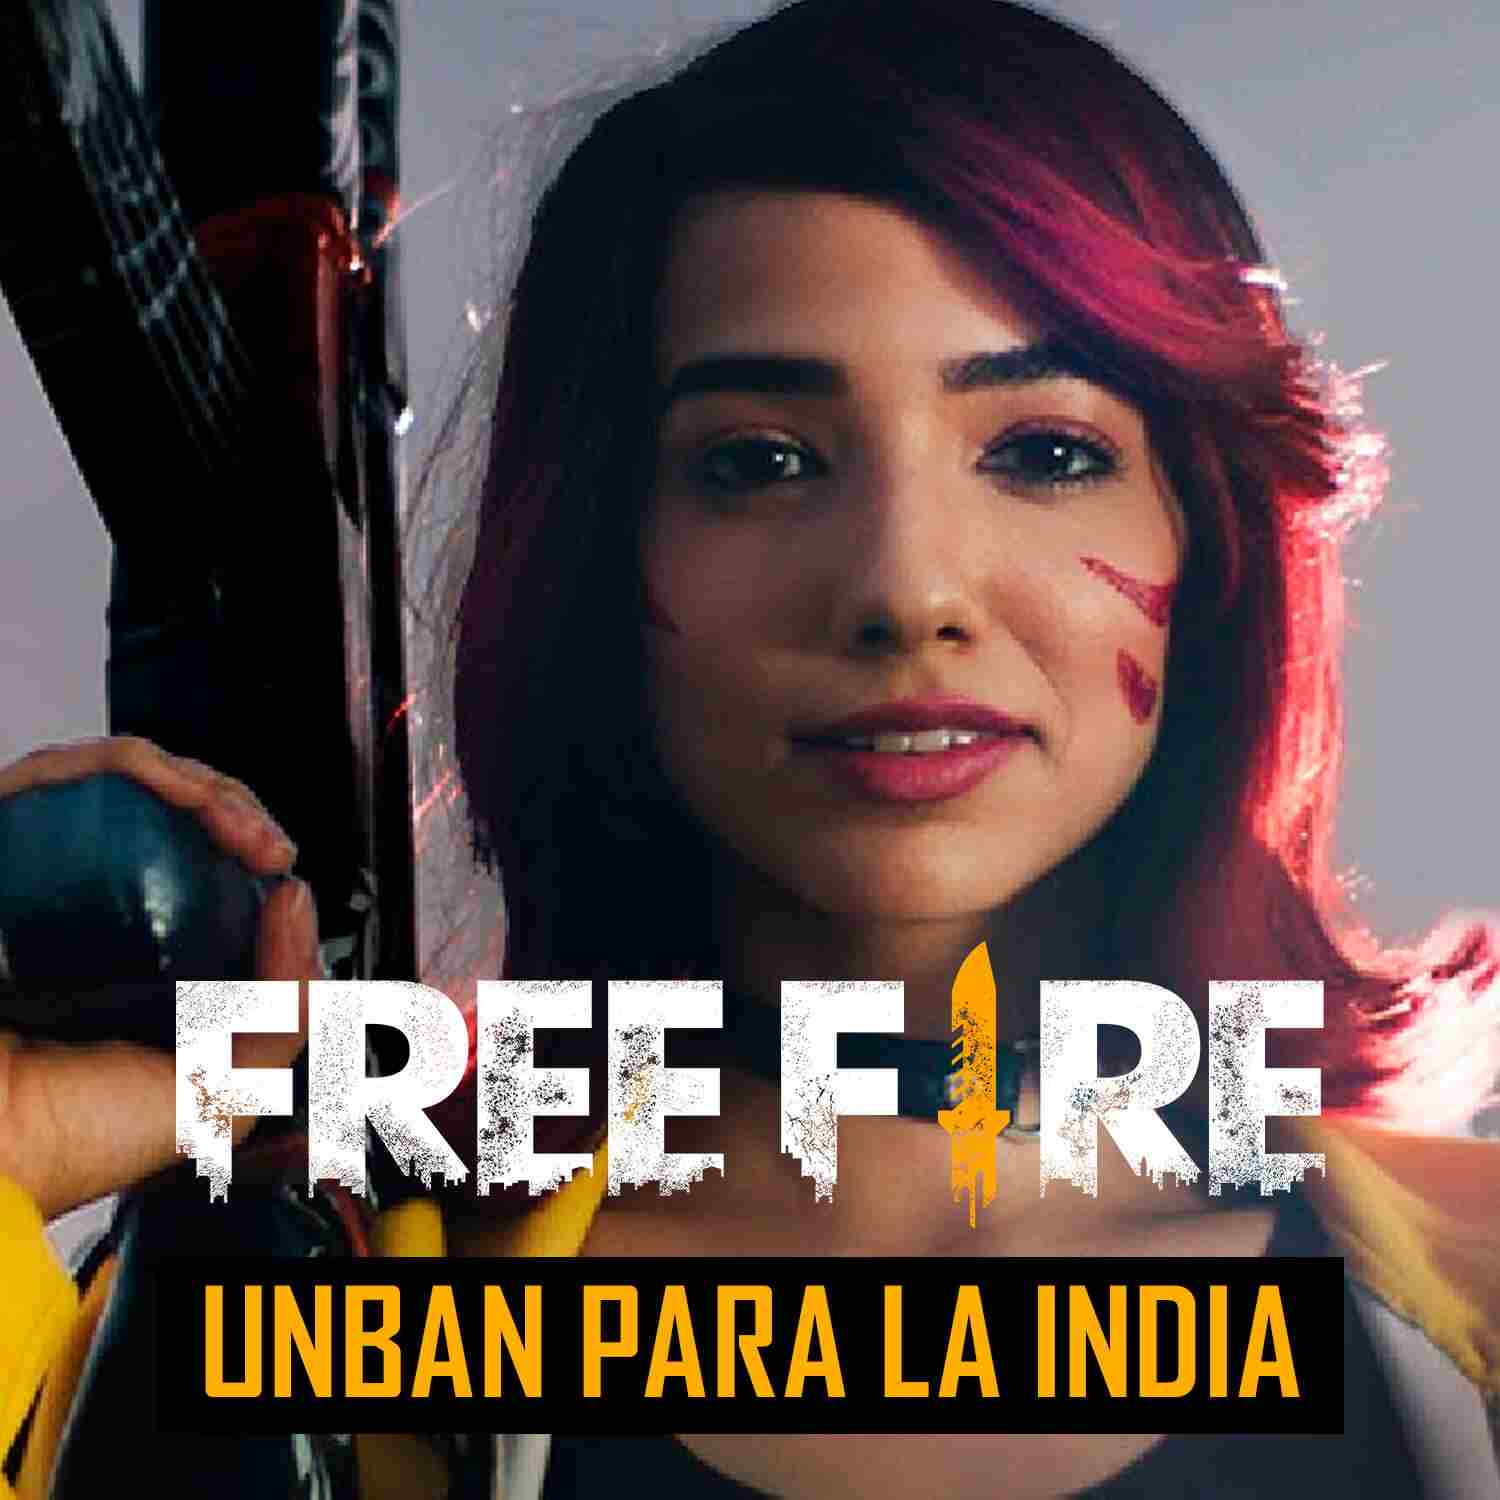 Garena promete solucionar la prohibición de Free Fire en India